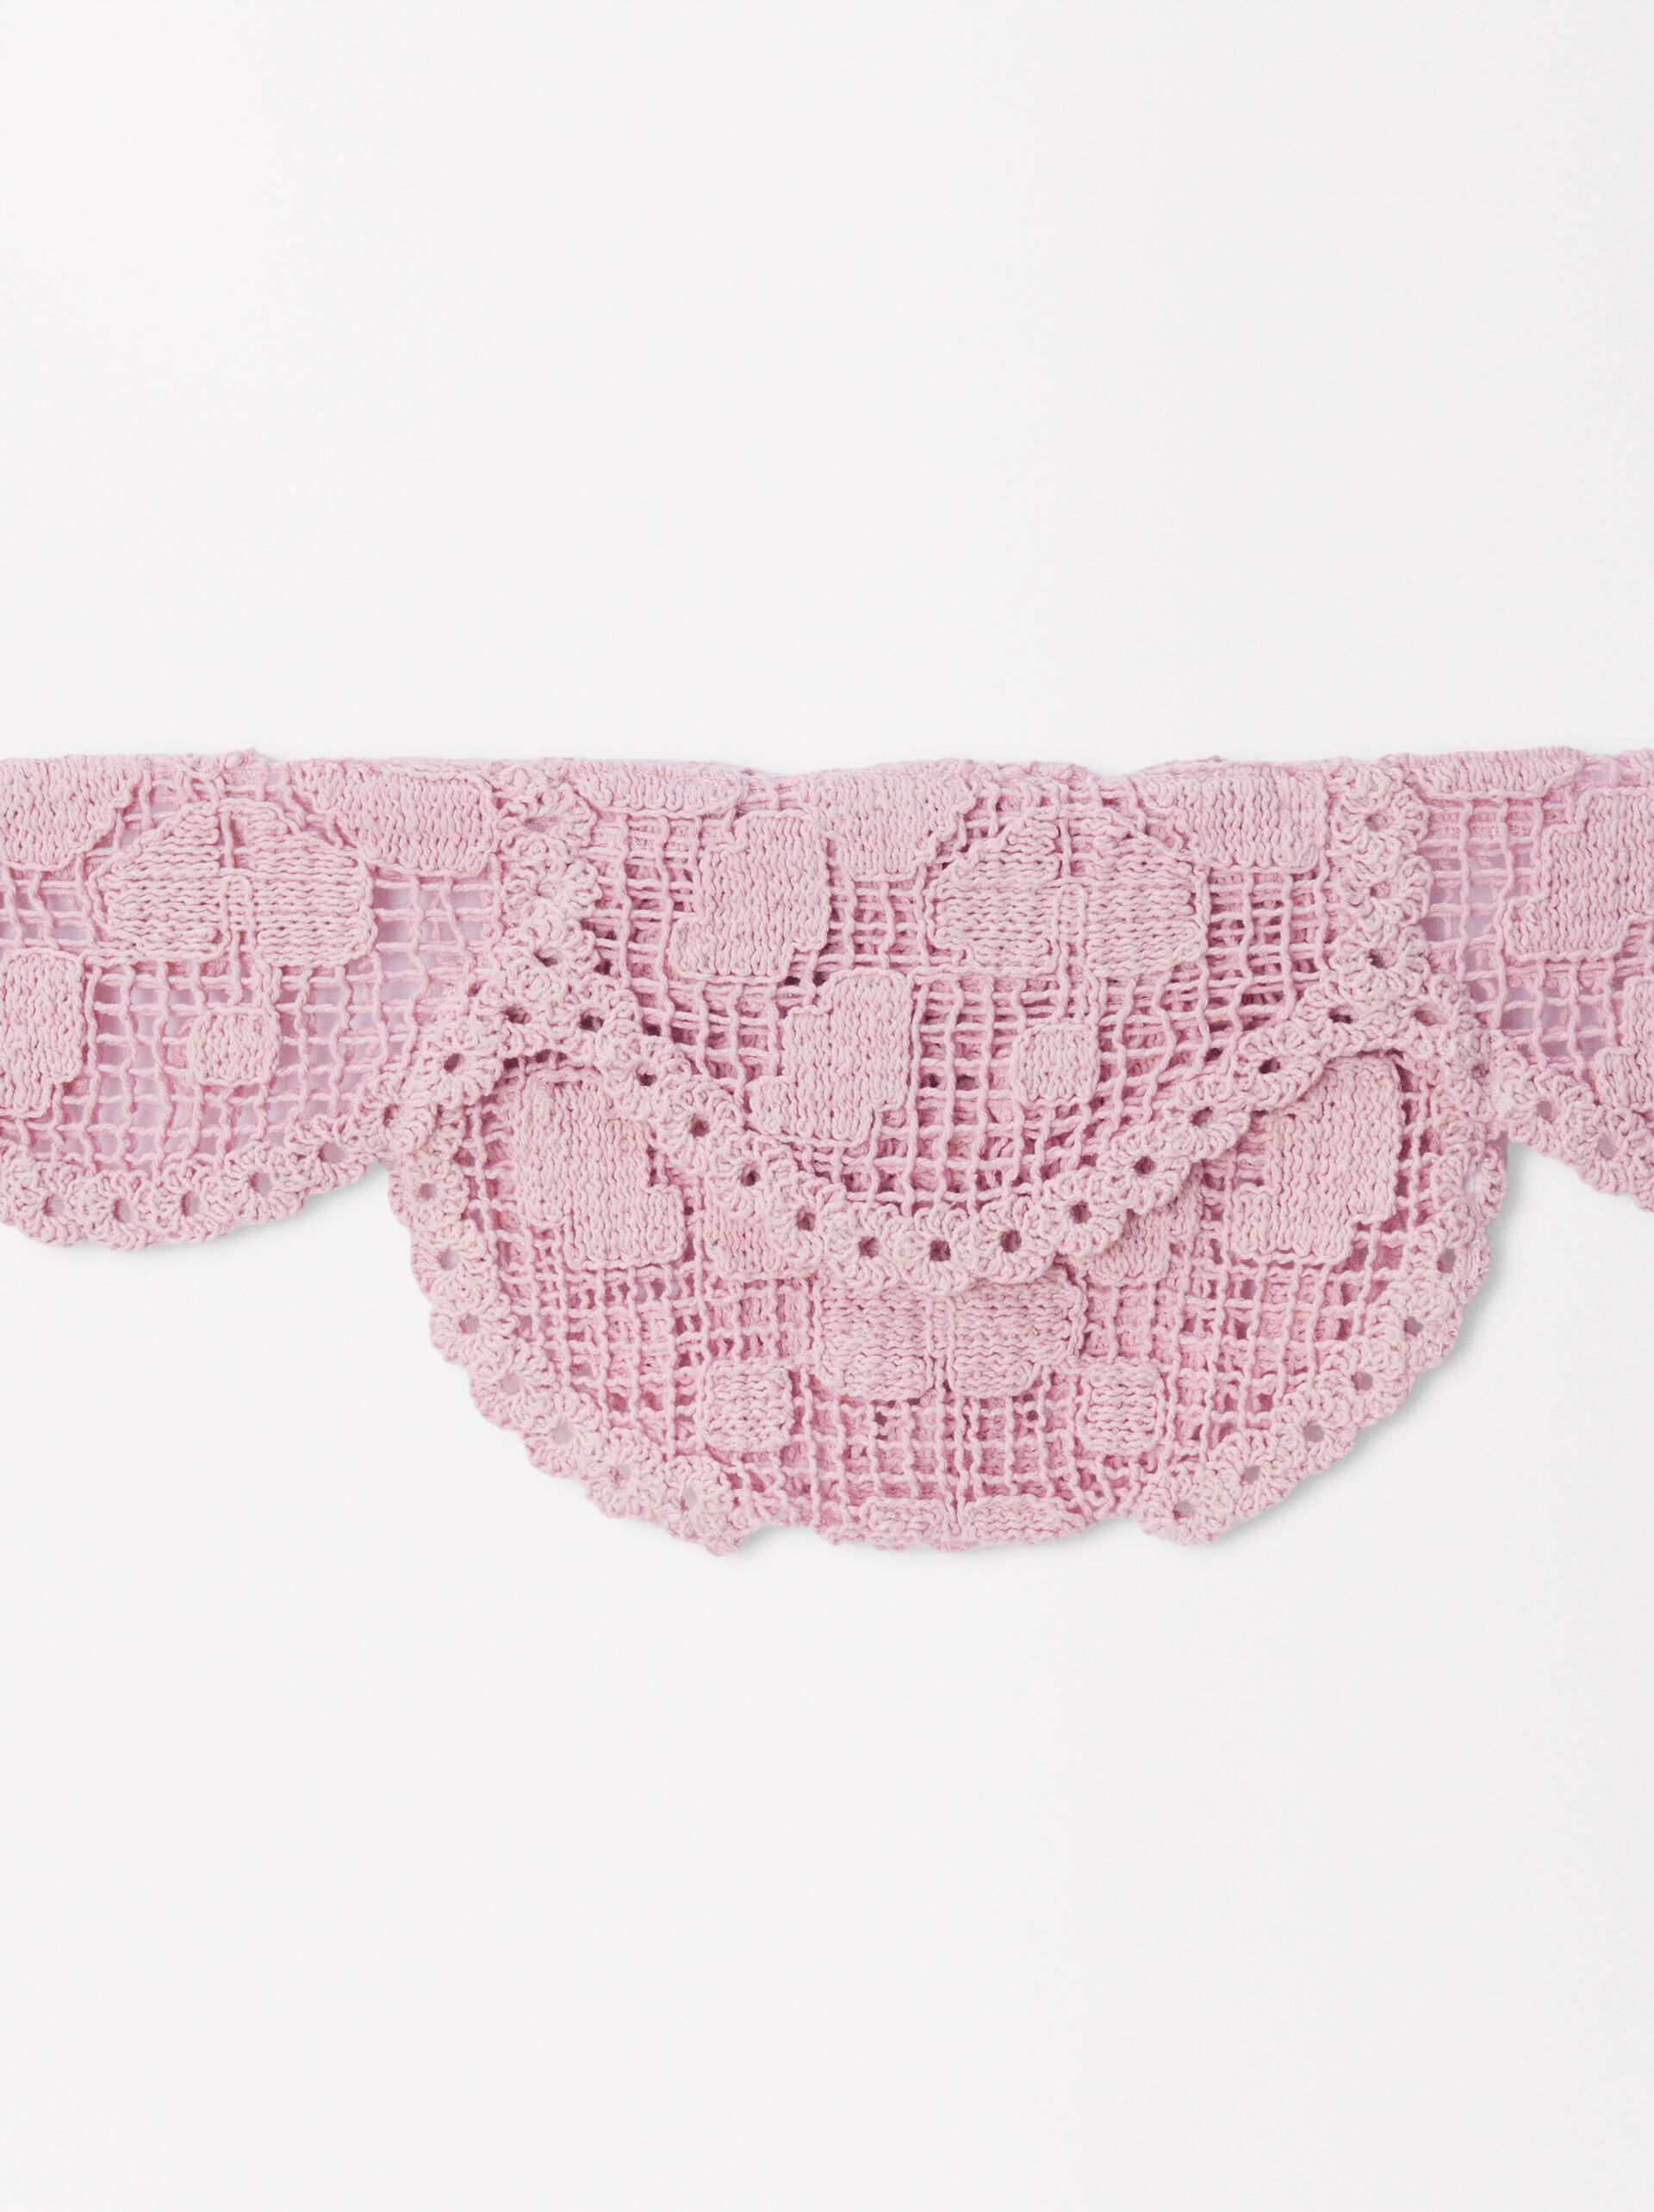 Exclusivo Online - Mala De Cintura Crochet image number 4.0